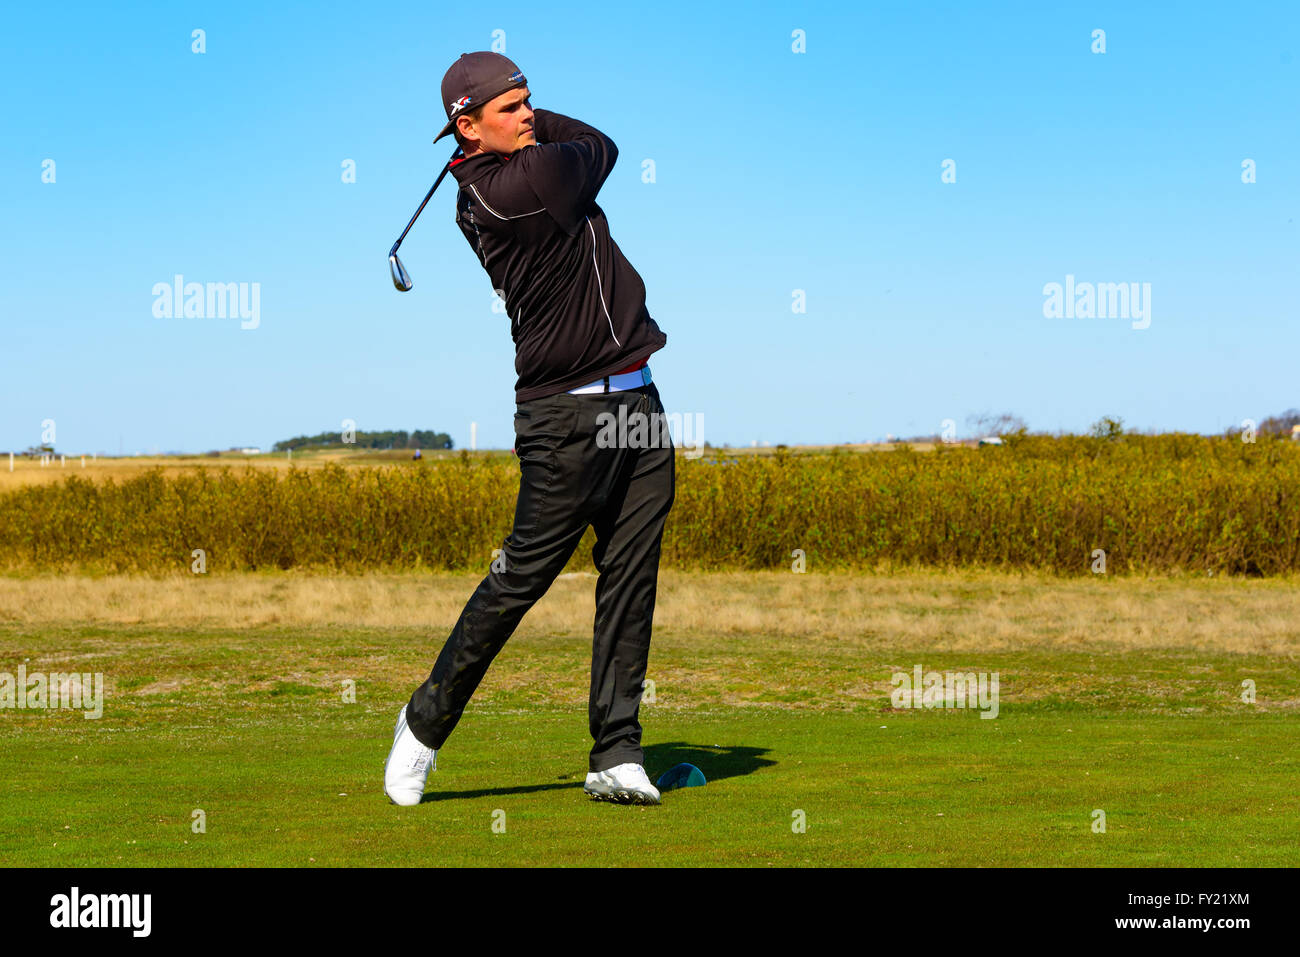 Skanor, Suède - 11 Avril 2016 : jeunes adultes mâles golfeur à la fin de son swing. Il est tous vêtus de noir et portent une casquette. Banque D'Images